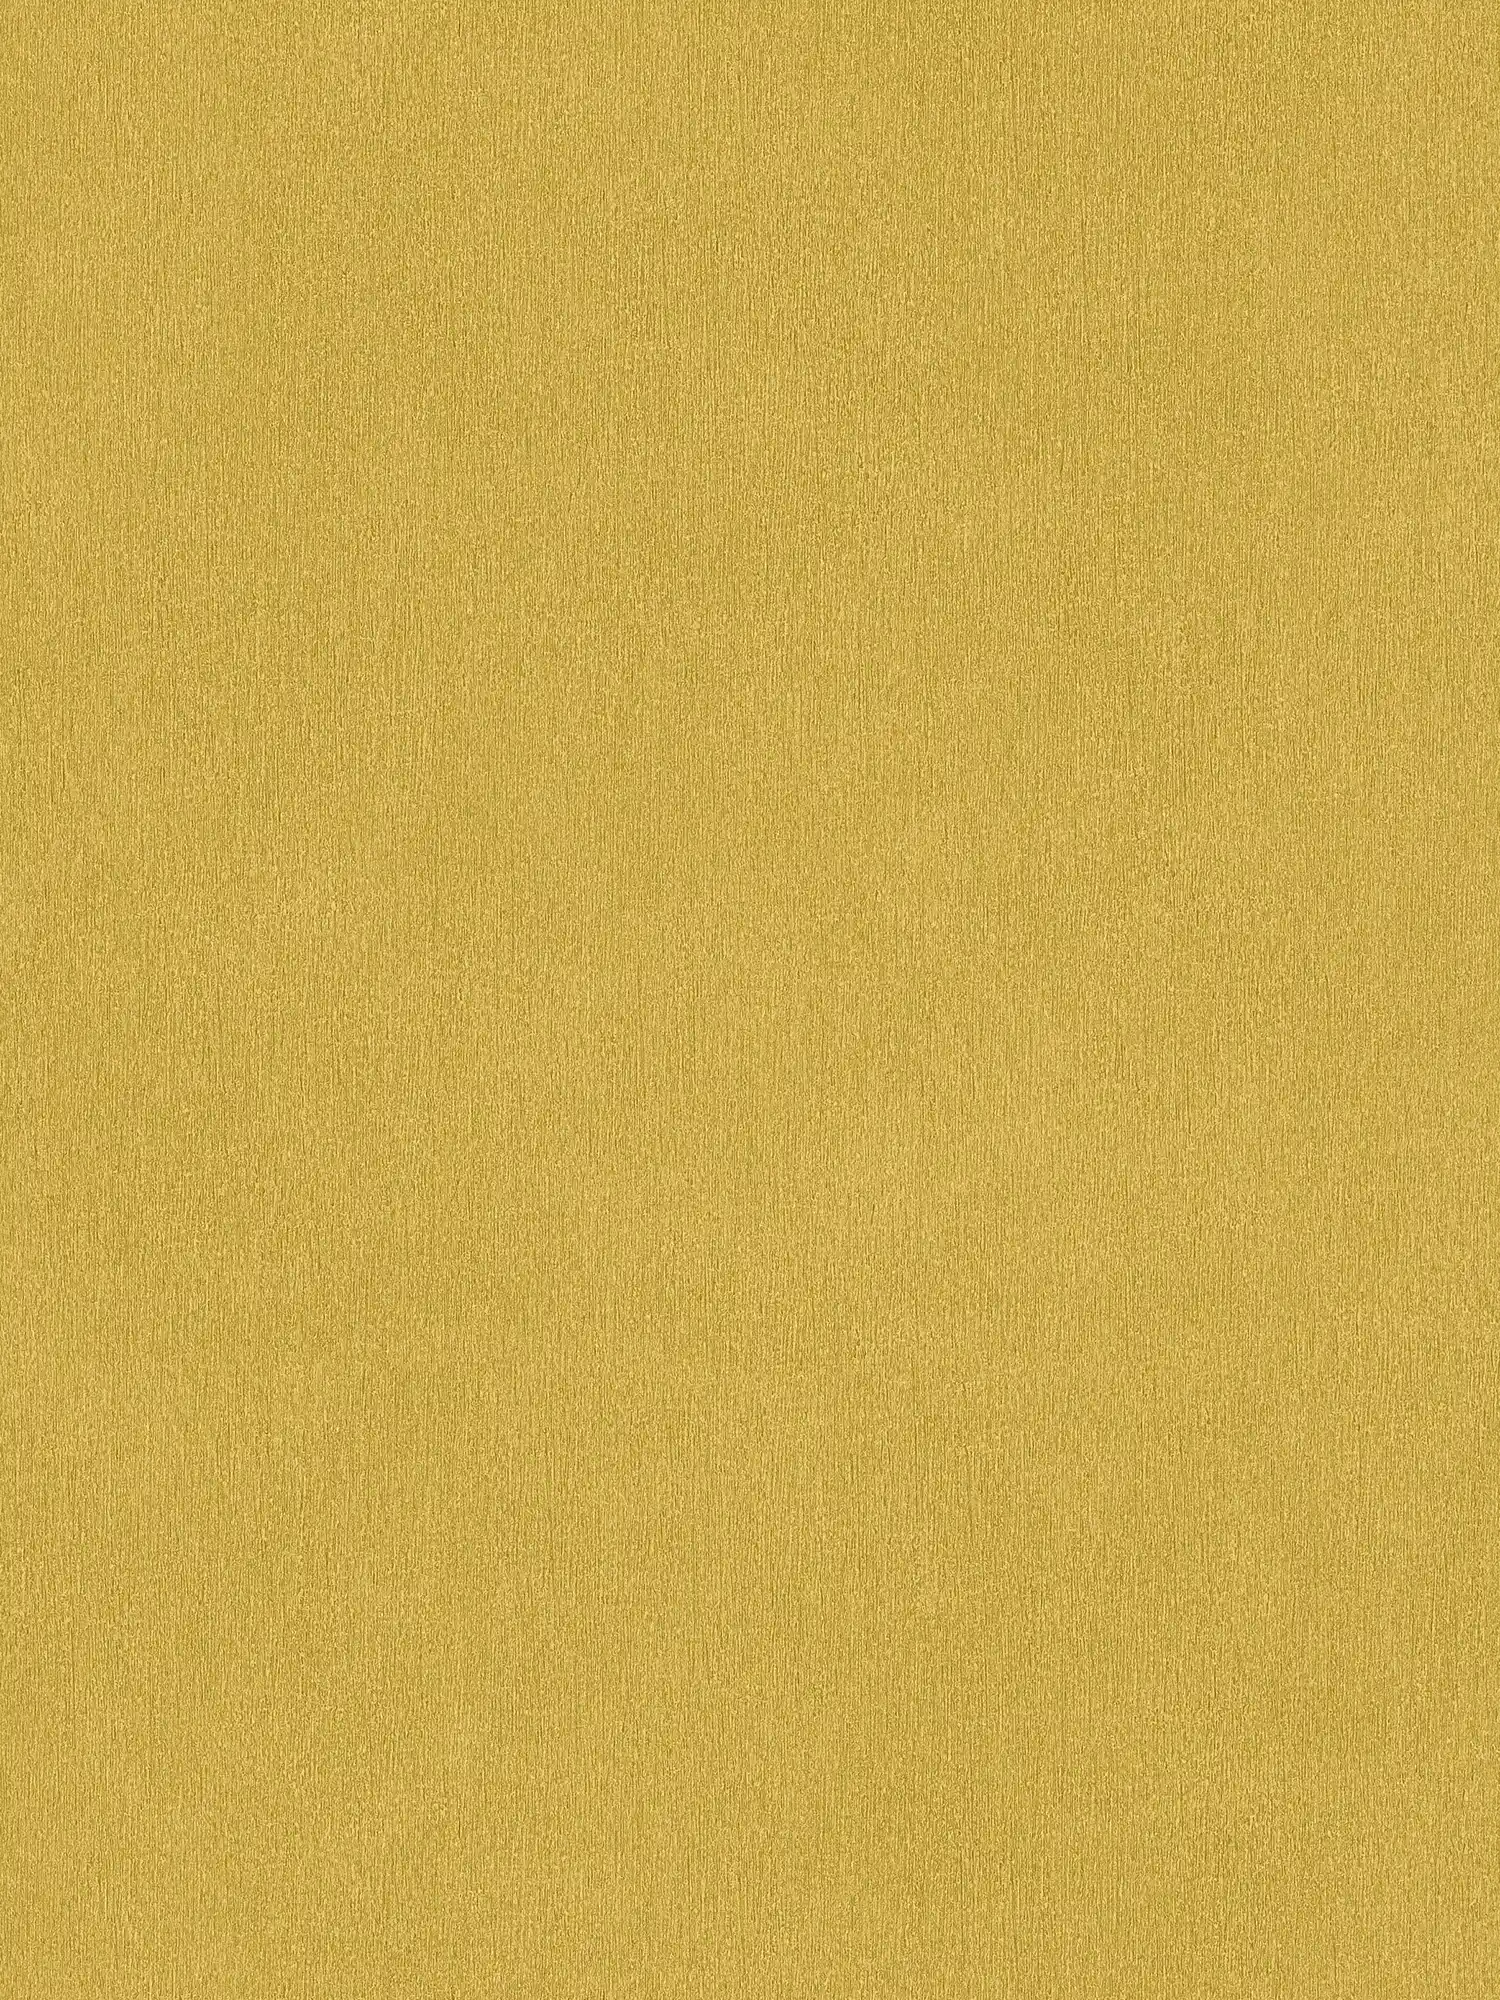 Carta da parati gialla a tinta unita con struttura cromatica, liscia e opaca come la seta
